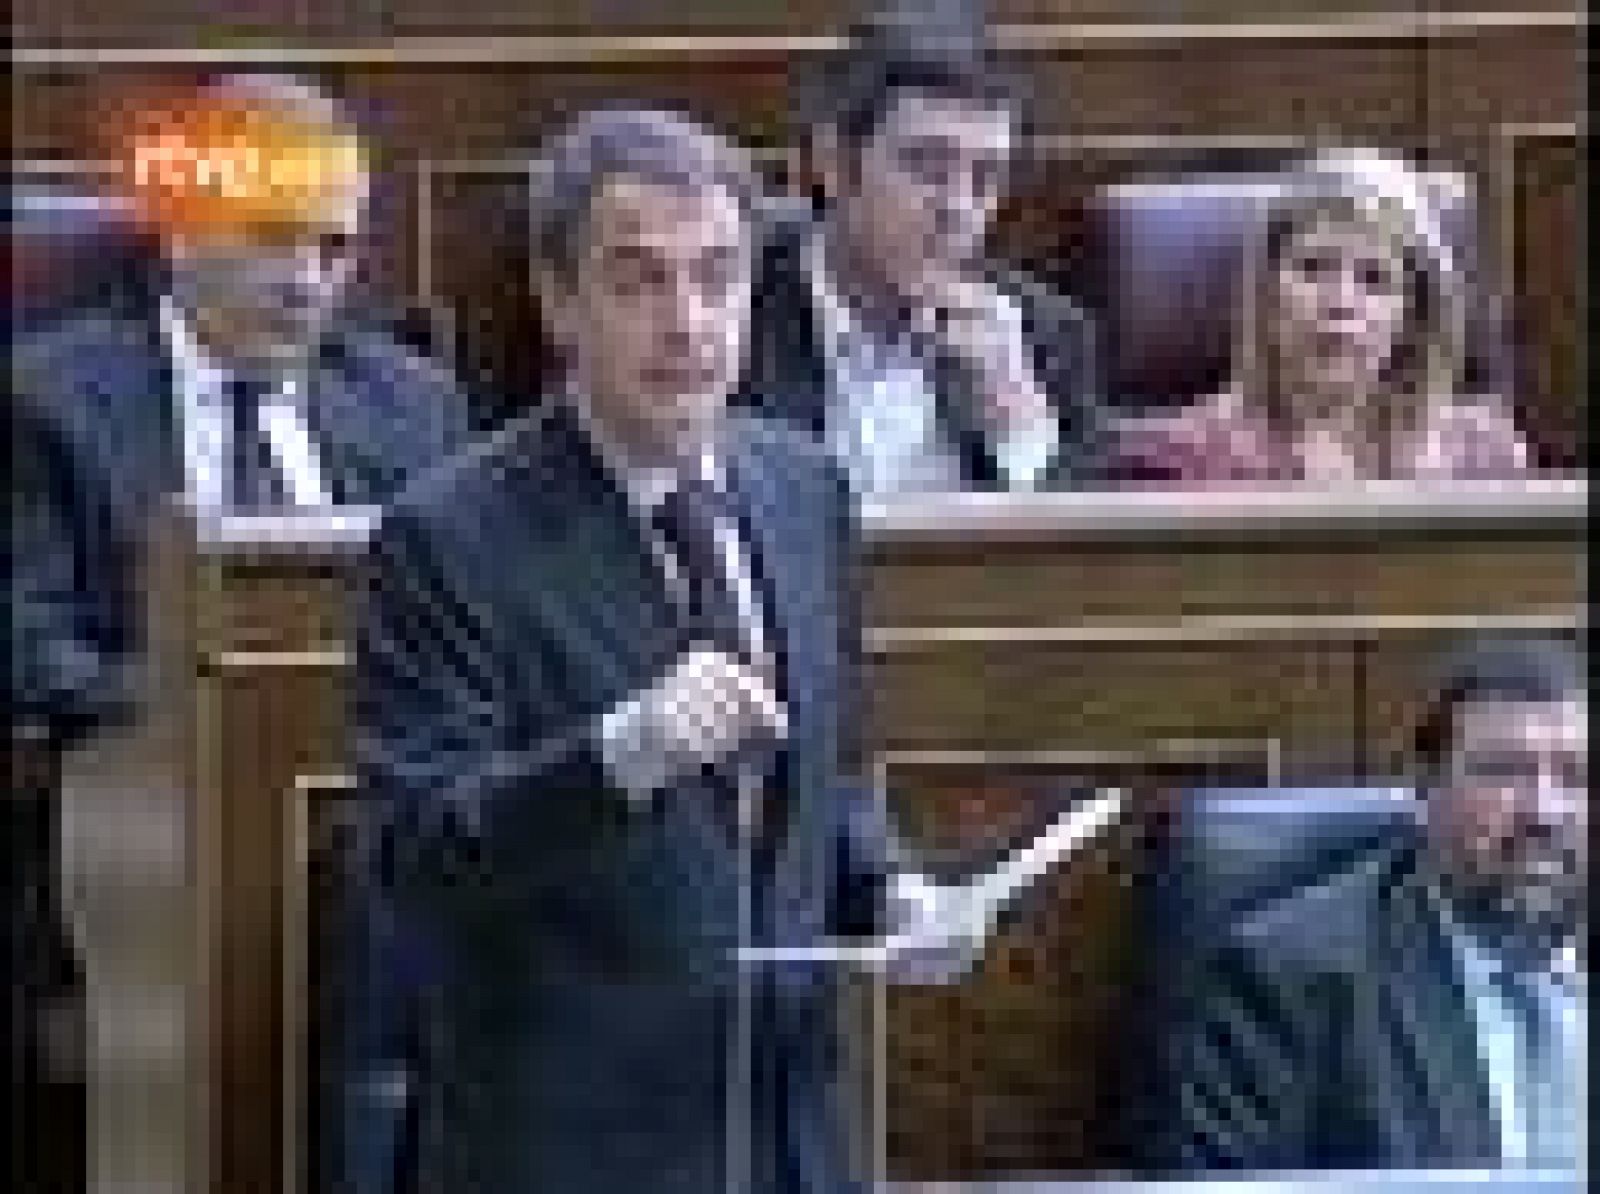 El presidente del Gobierno, José Luis Rodríguez Zapatero, ha asegurado que es "inaceptable e inasumible" que Rajoy "mantenga silencio ante la llamada a la rebelión" de la presidenta de la Comunidad de Madrid, Esperanza Aguirre, en relación a la subida del IVA planteada por el Gobierno.